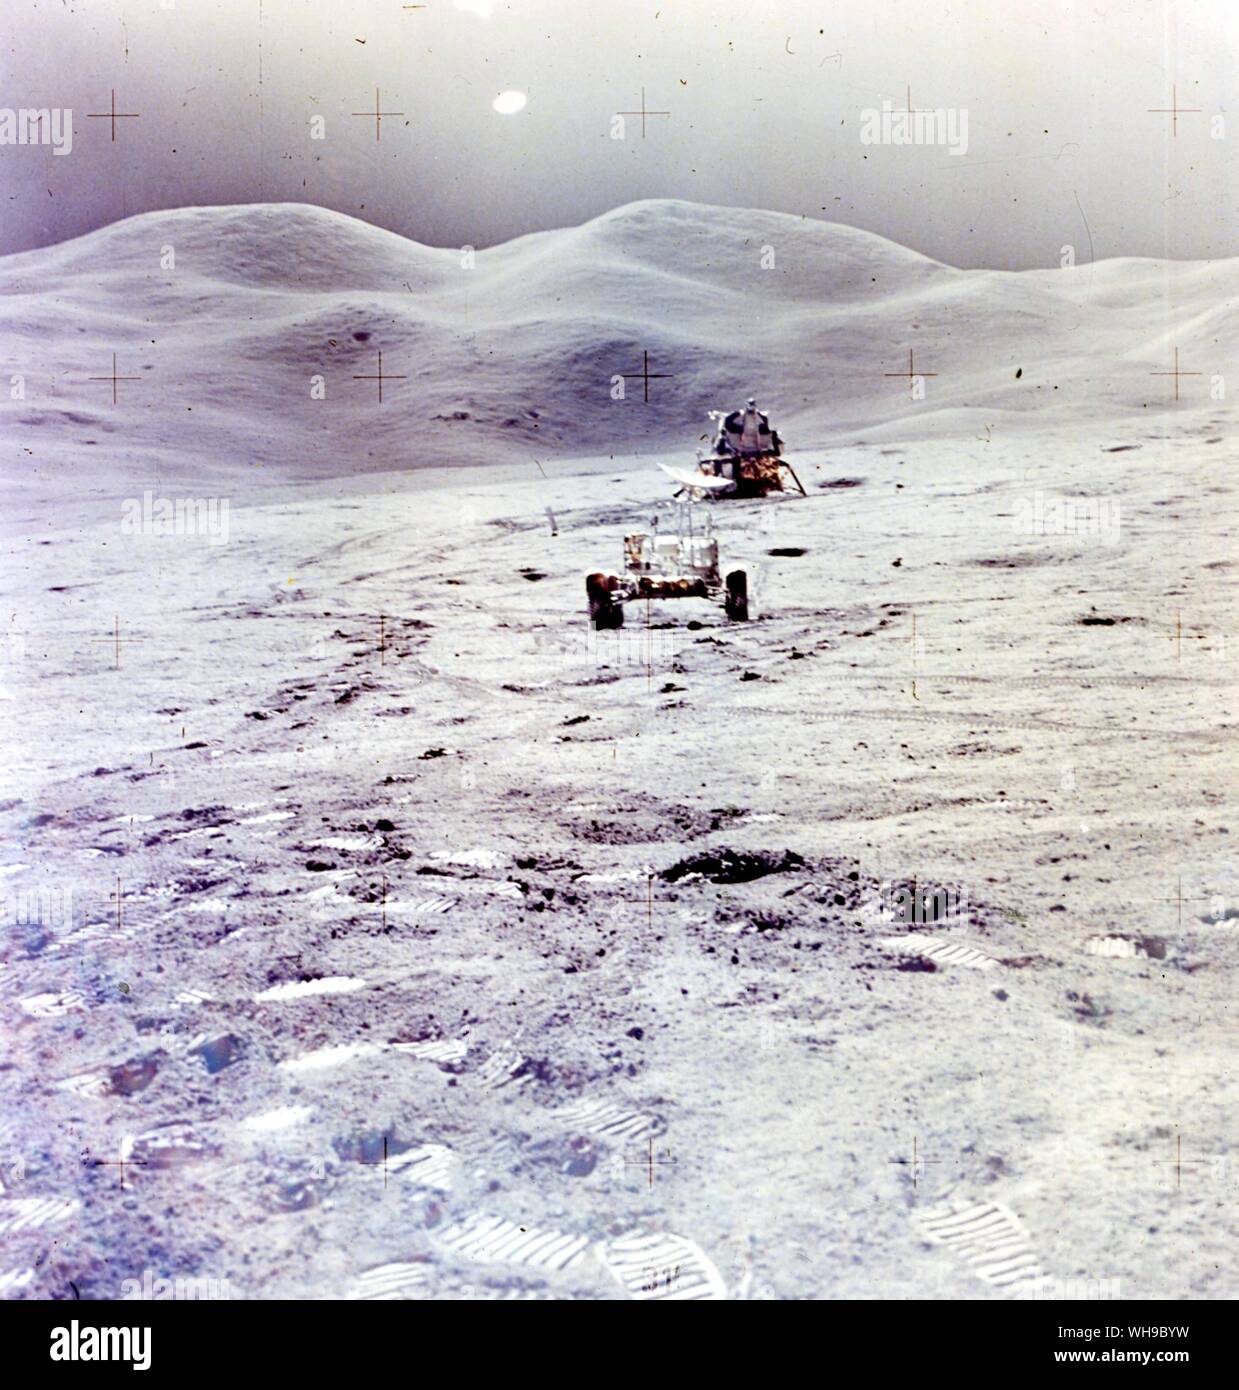 Raum / Astronauten auf dem Mond Rover und Lunar Module, Apollo 15. Stockfoto